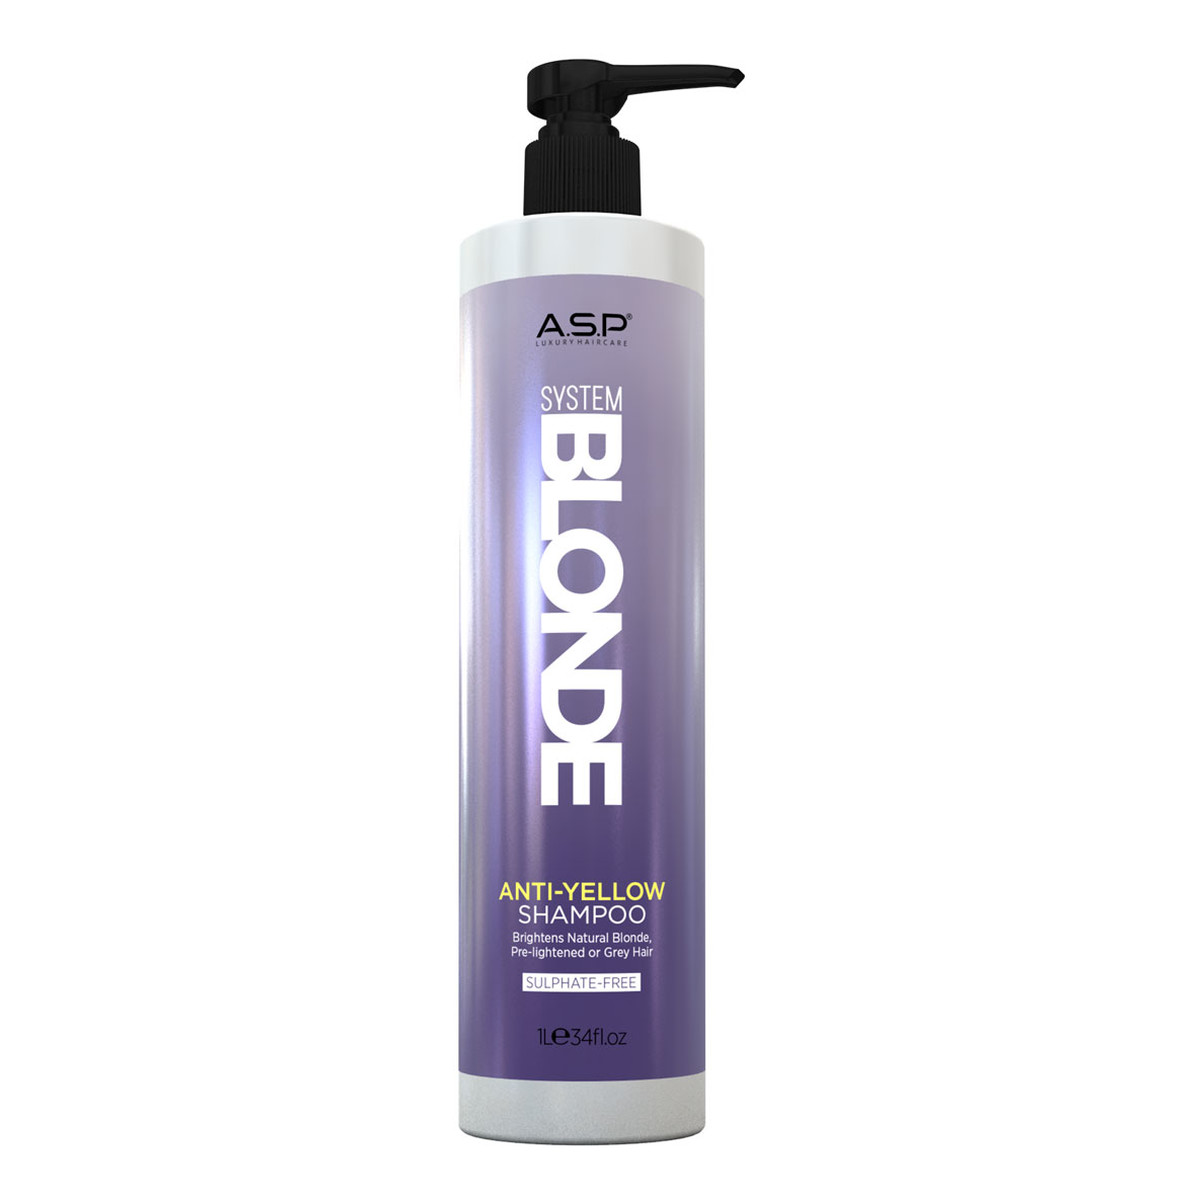 Affinage Salon Professional System blonde anti-yellow shampoo szampon do włosów blond 1000ml